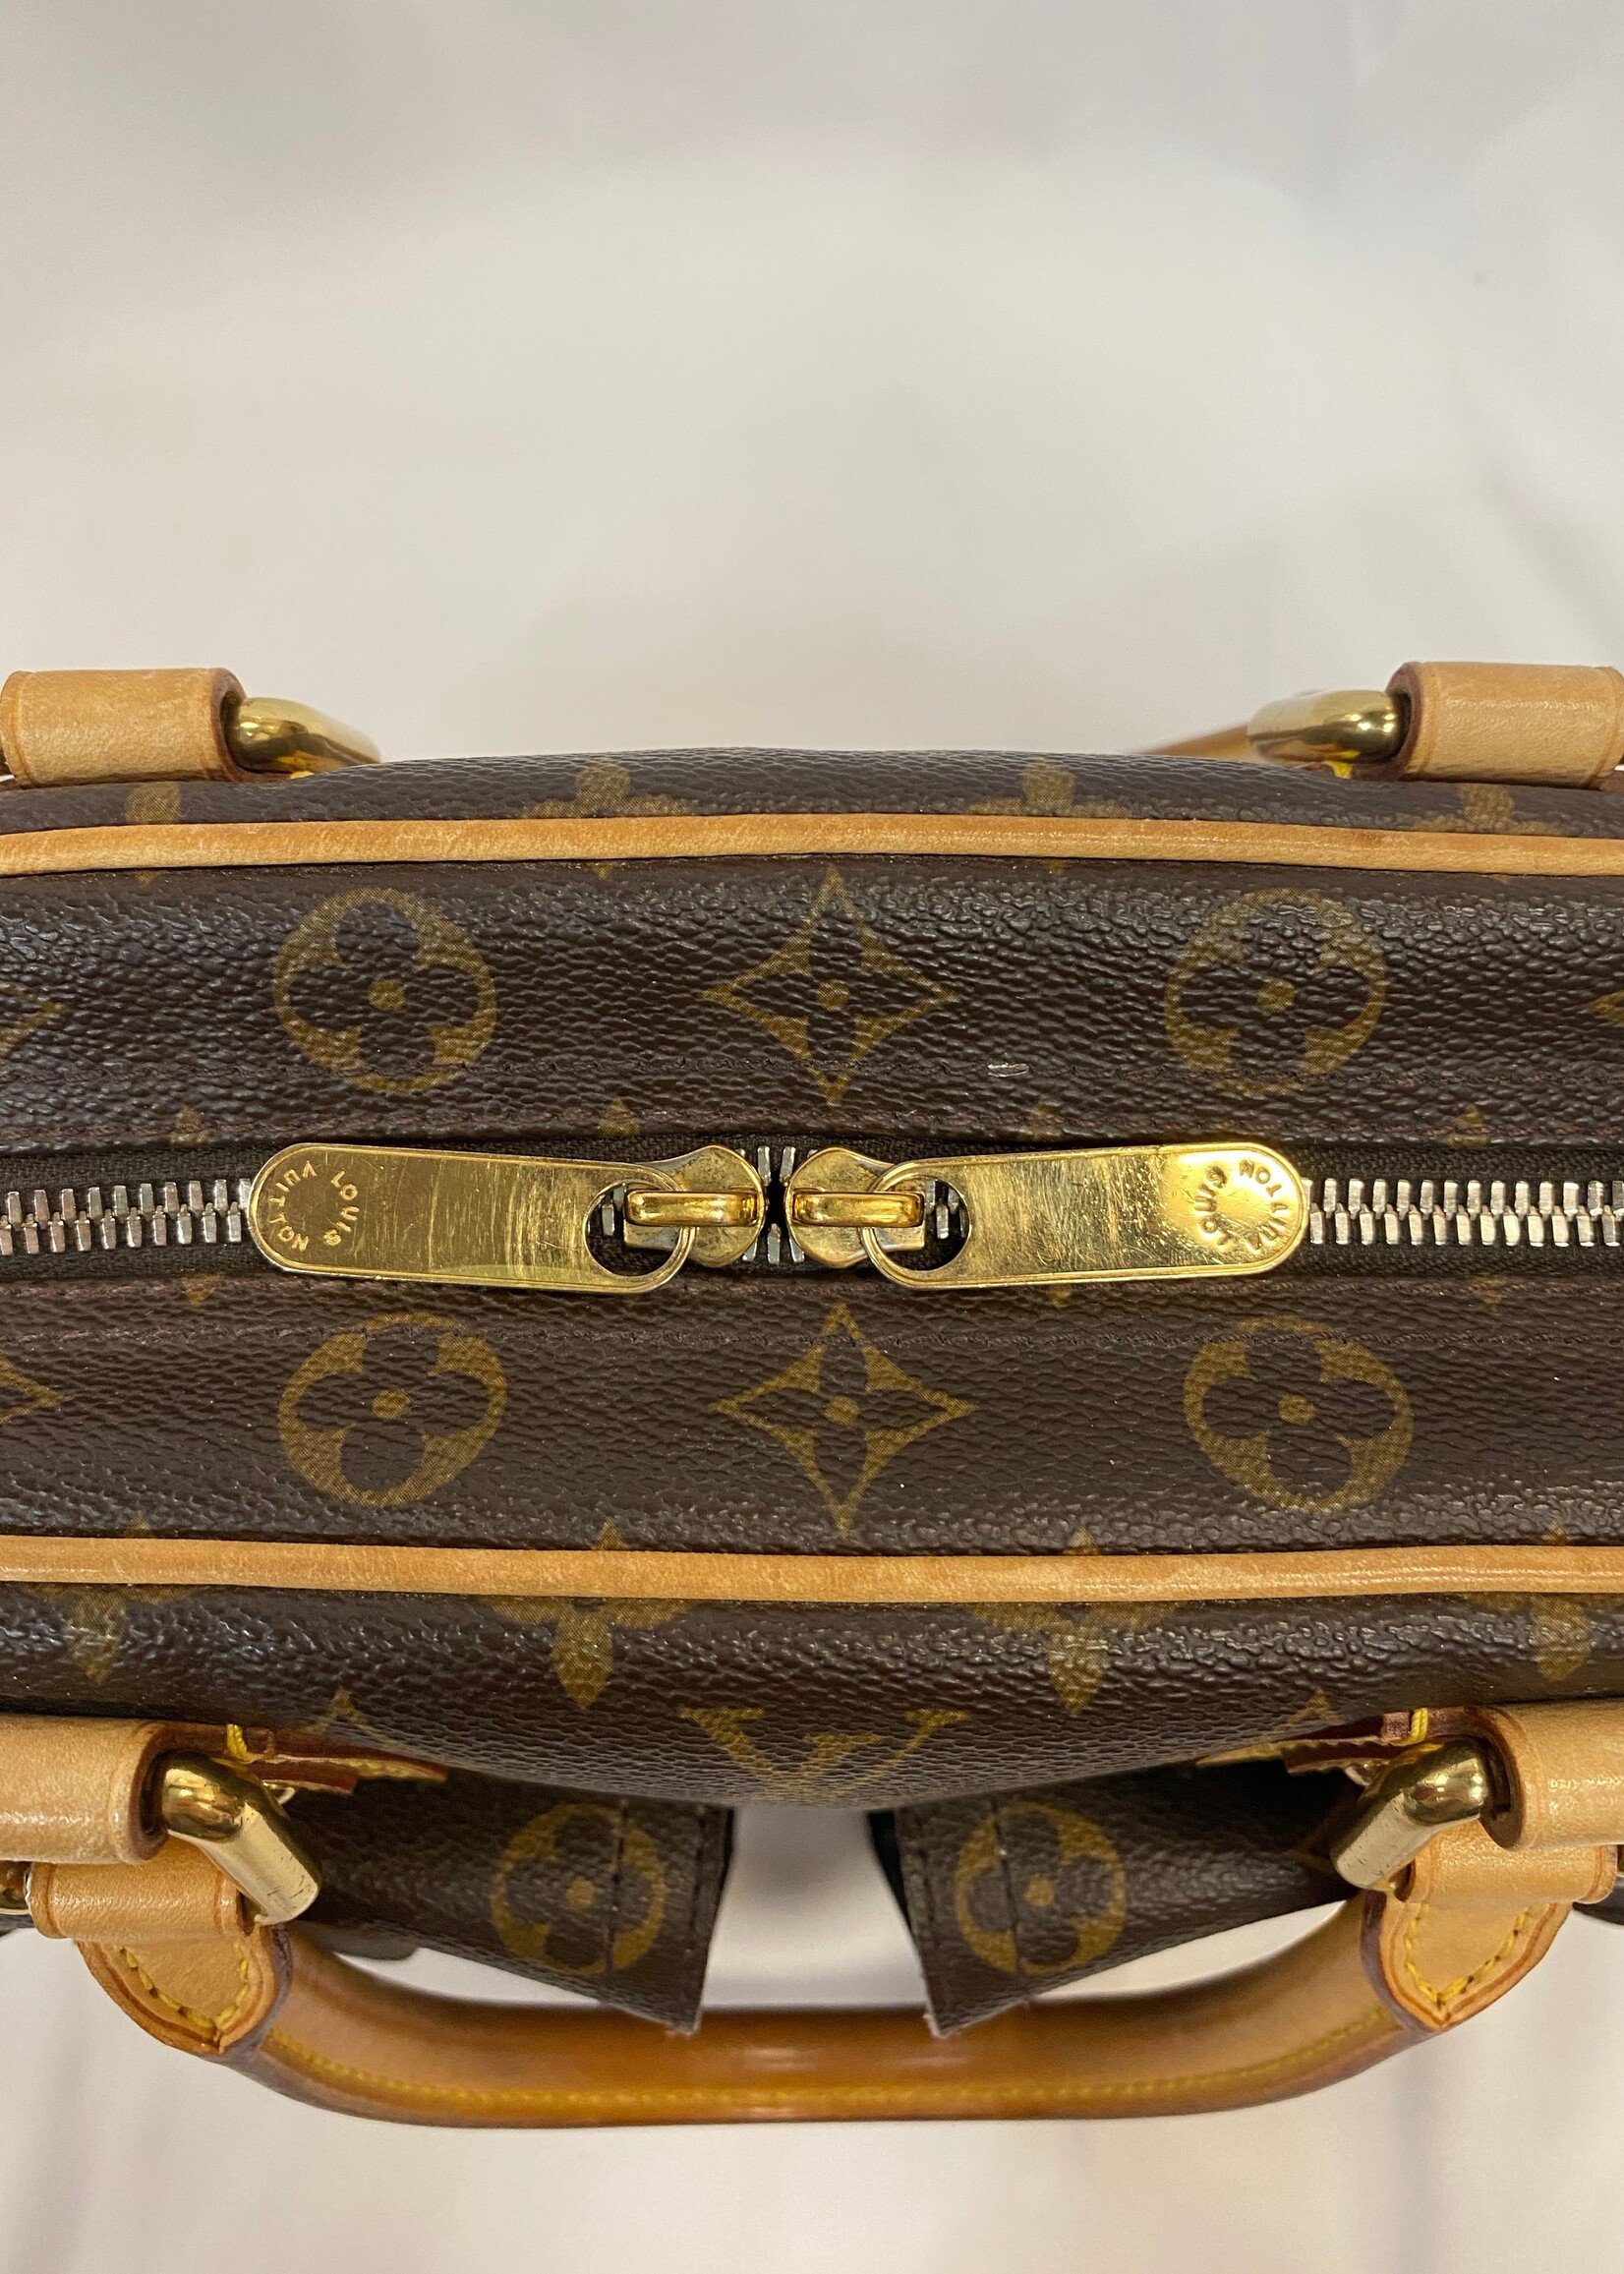 Best Deals for Louis Vuitton Manhattan Pm Bag